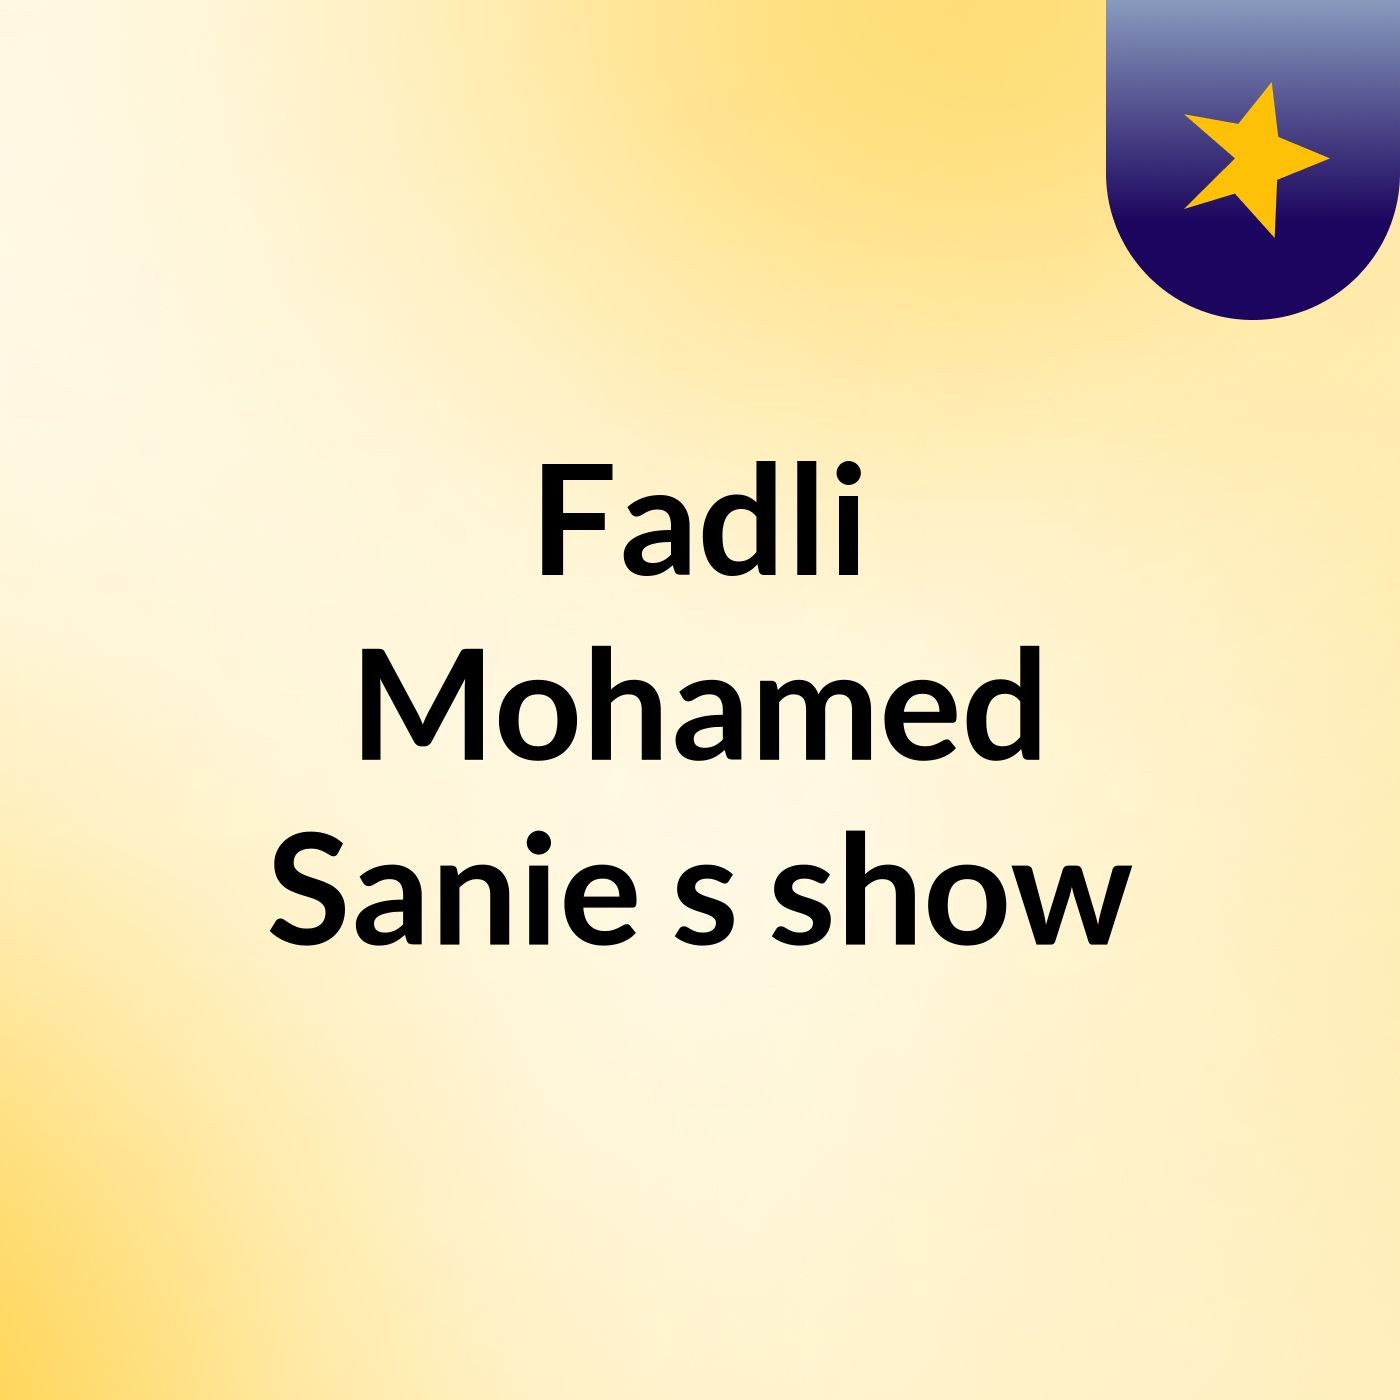 Episode 5 - Fadli Mohamed Sanie's show